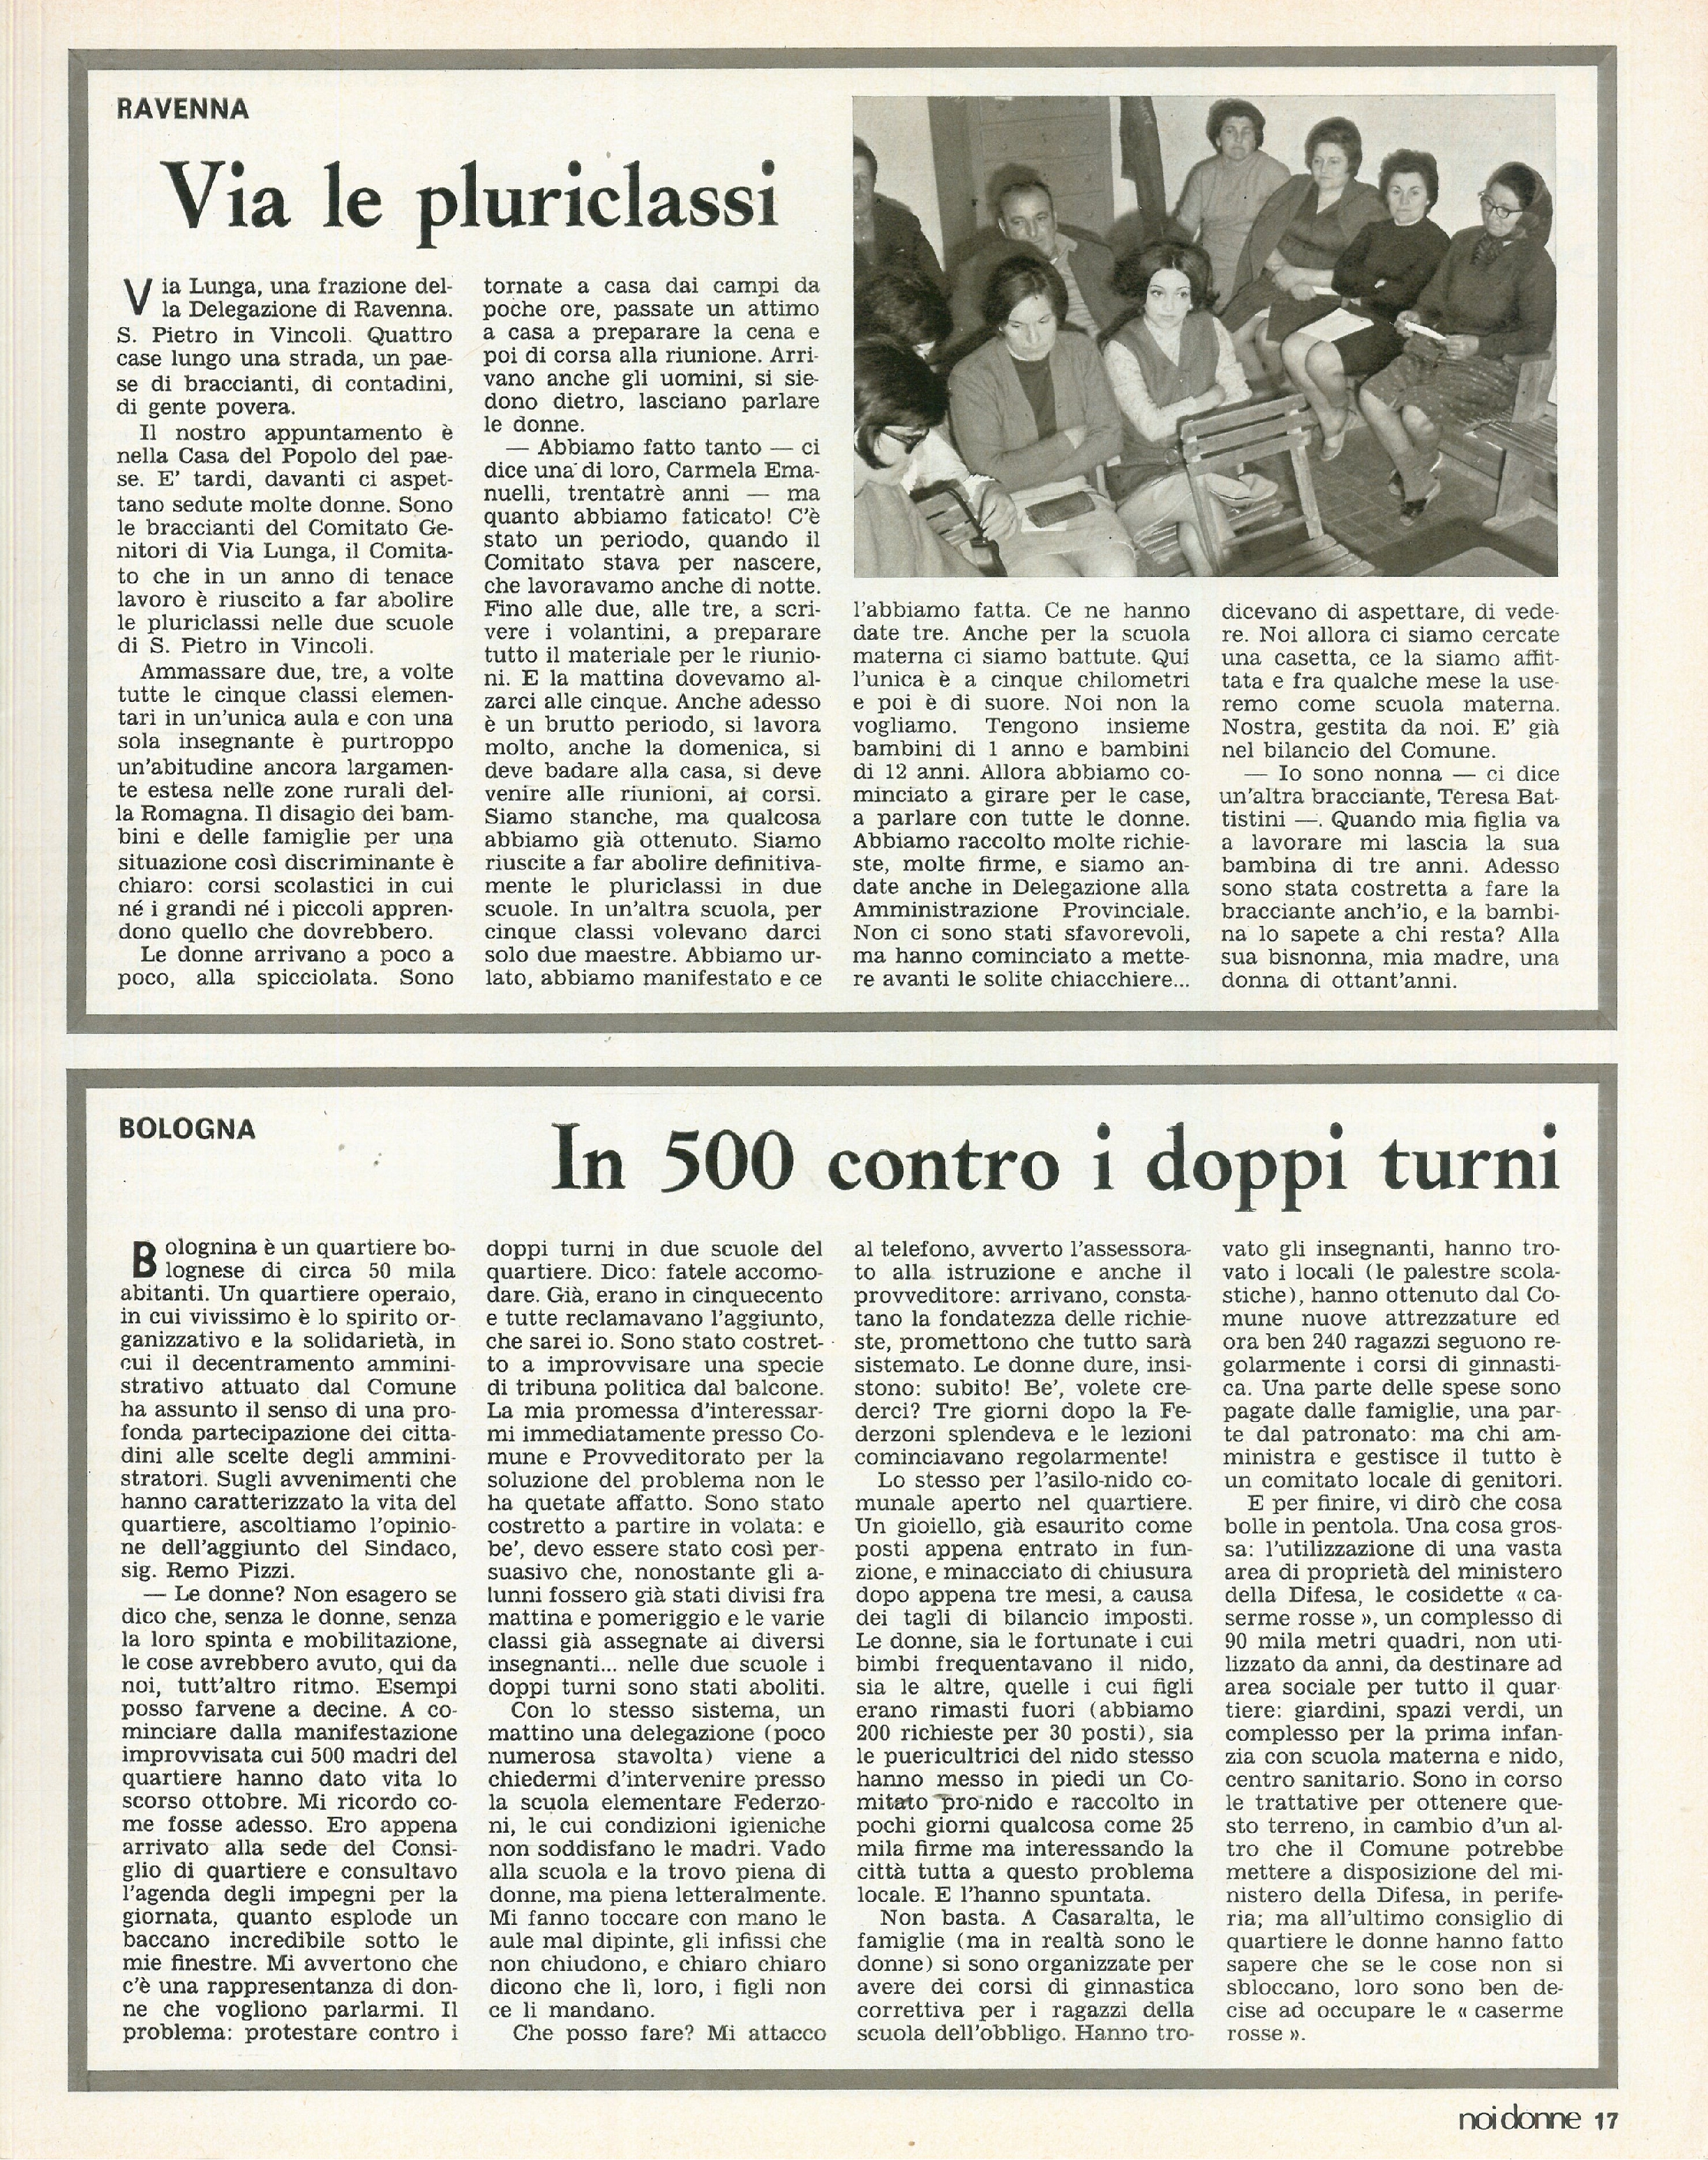 Foto: Emilia Romagna: una regione dove le donne contano; USA: giovani contro la guerra in Vietnam; Minori addandonati